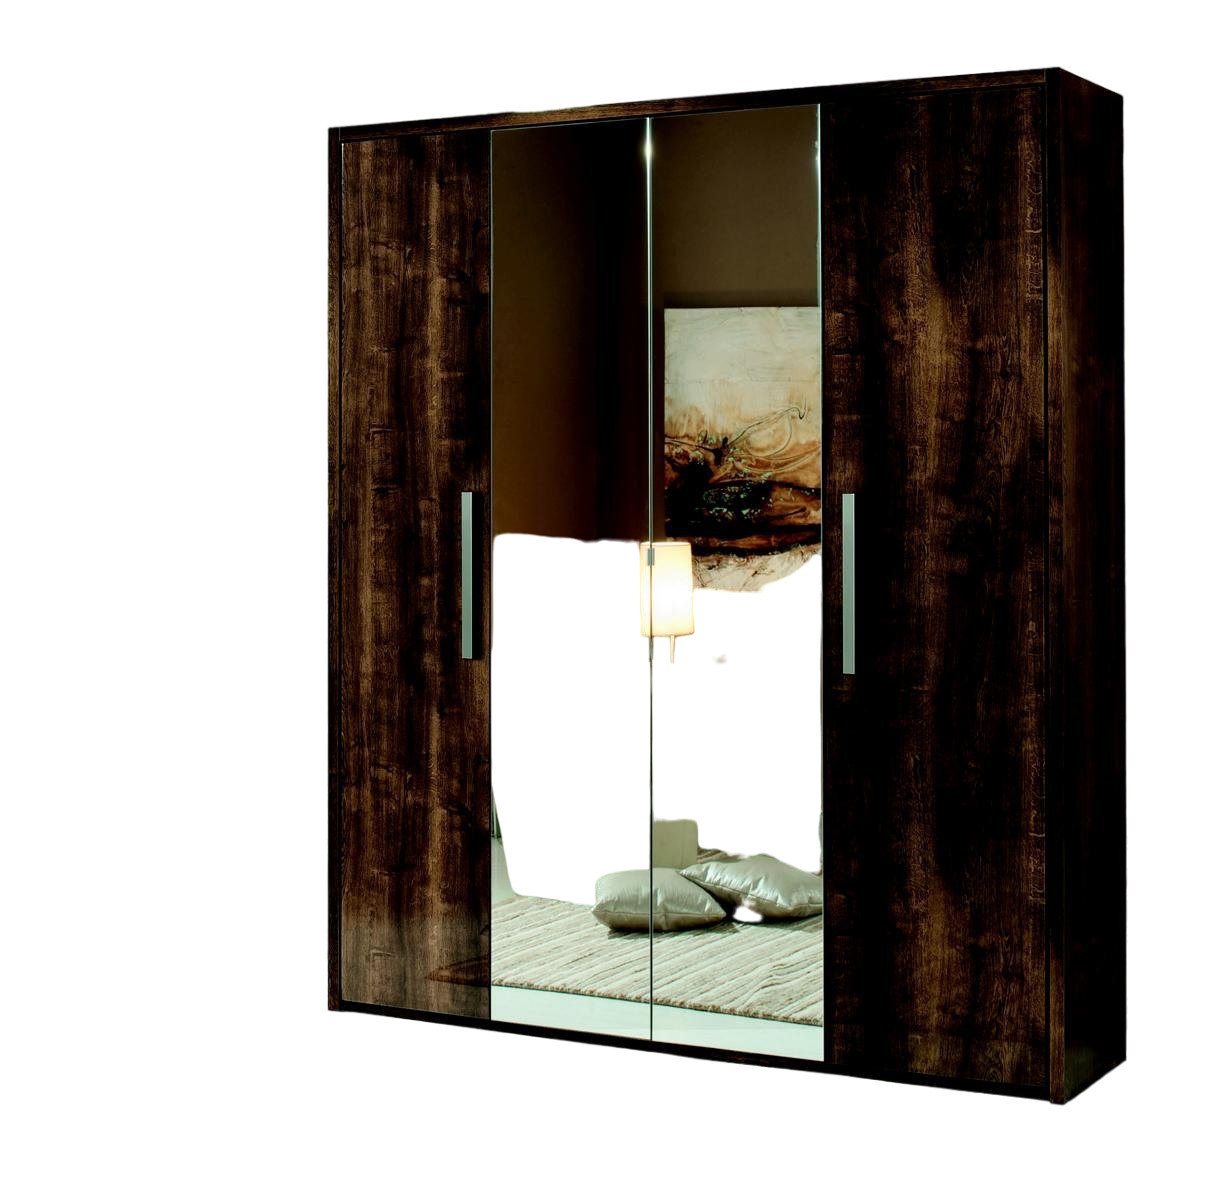 JVmoebel Kleiderschrank Kleiderschrank Schrank Design Möbel Holz Luxus Spiegel Schlafzimmer von JVmoebel